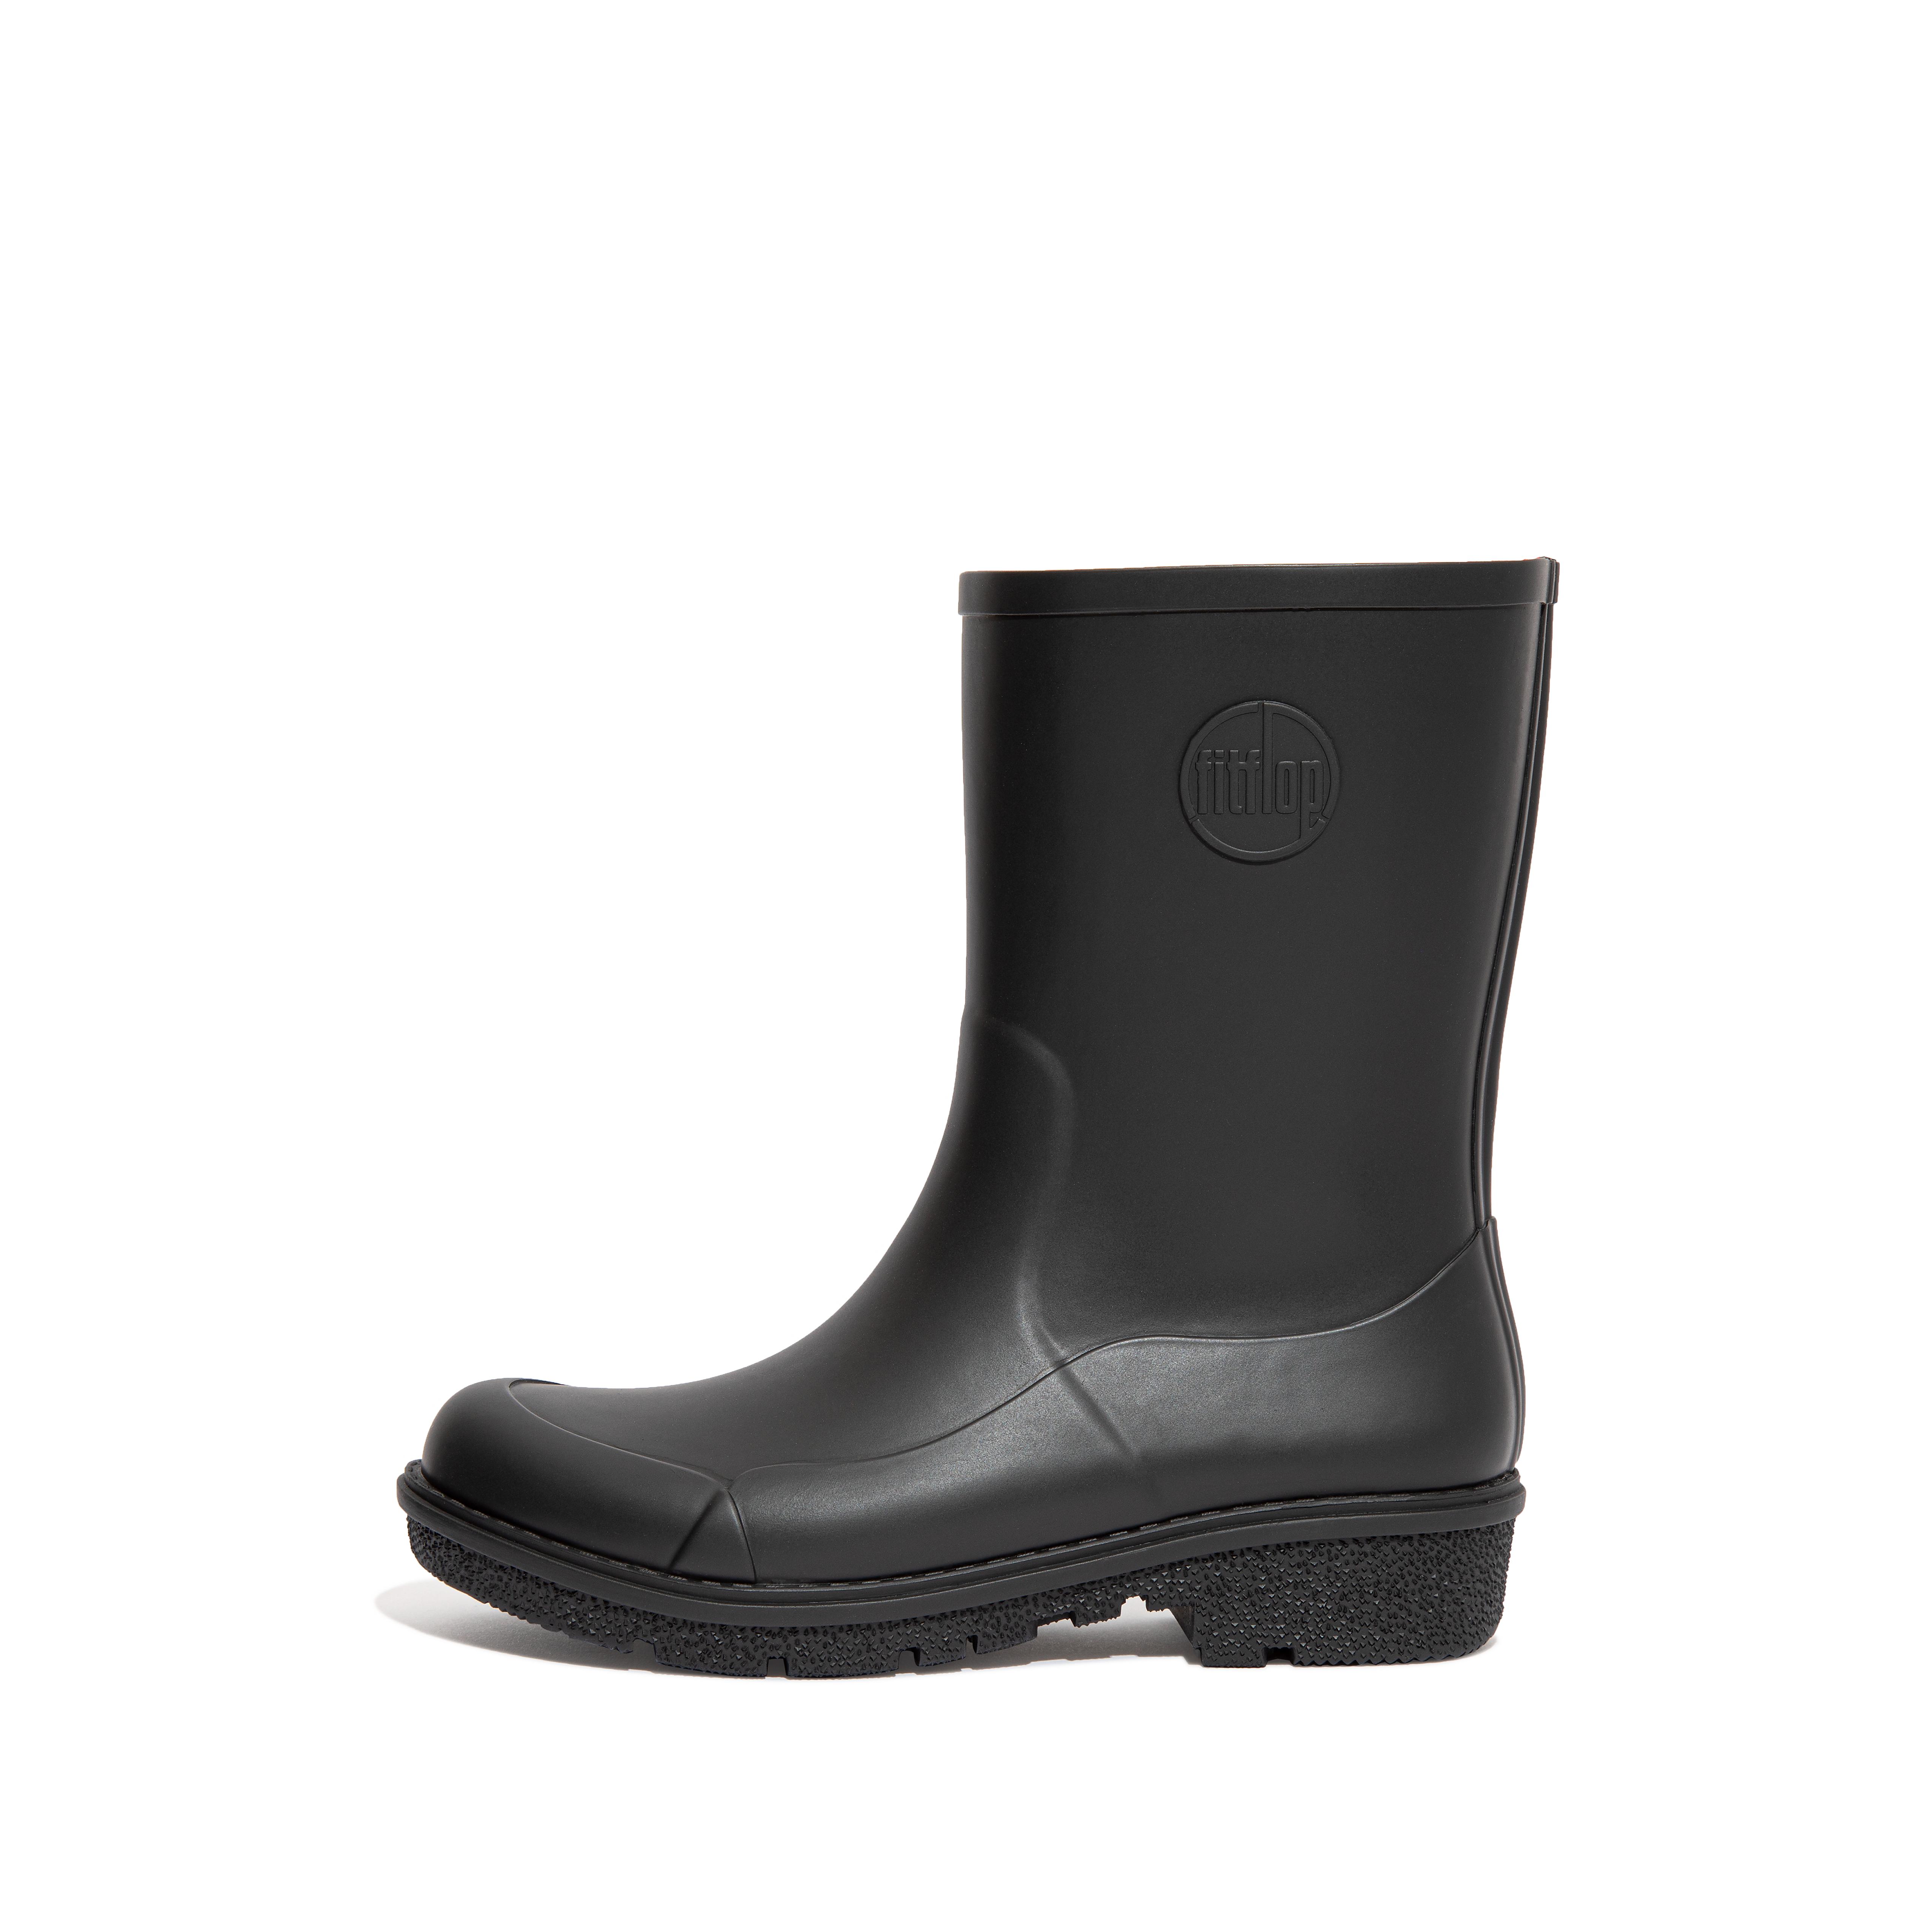 핏플랍 장화 (레인부츠) FitFlop WONDERWELLY Short Rain Boots,All Black